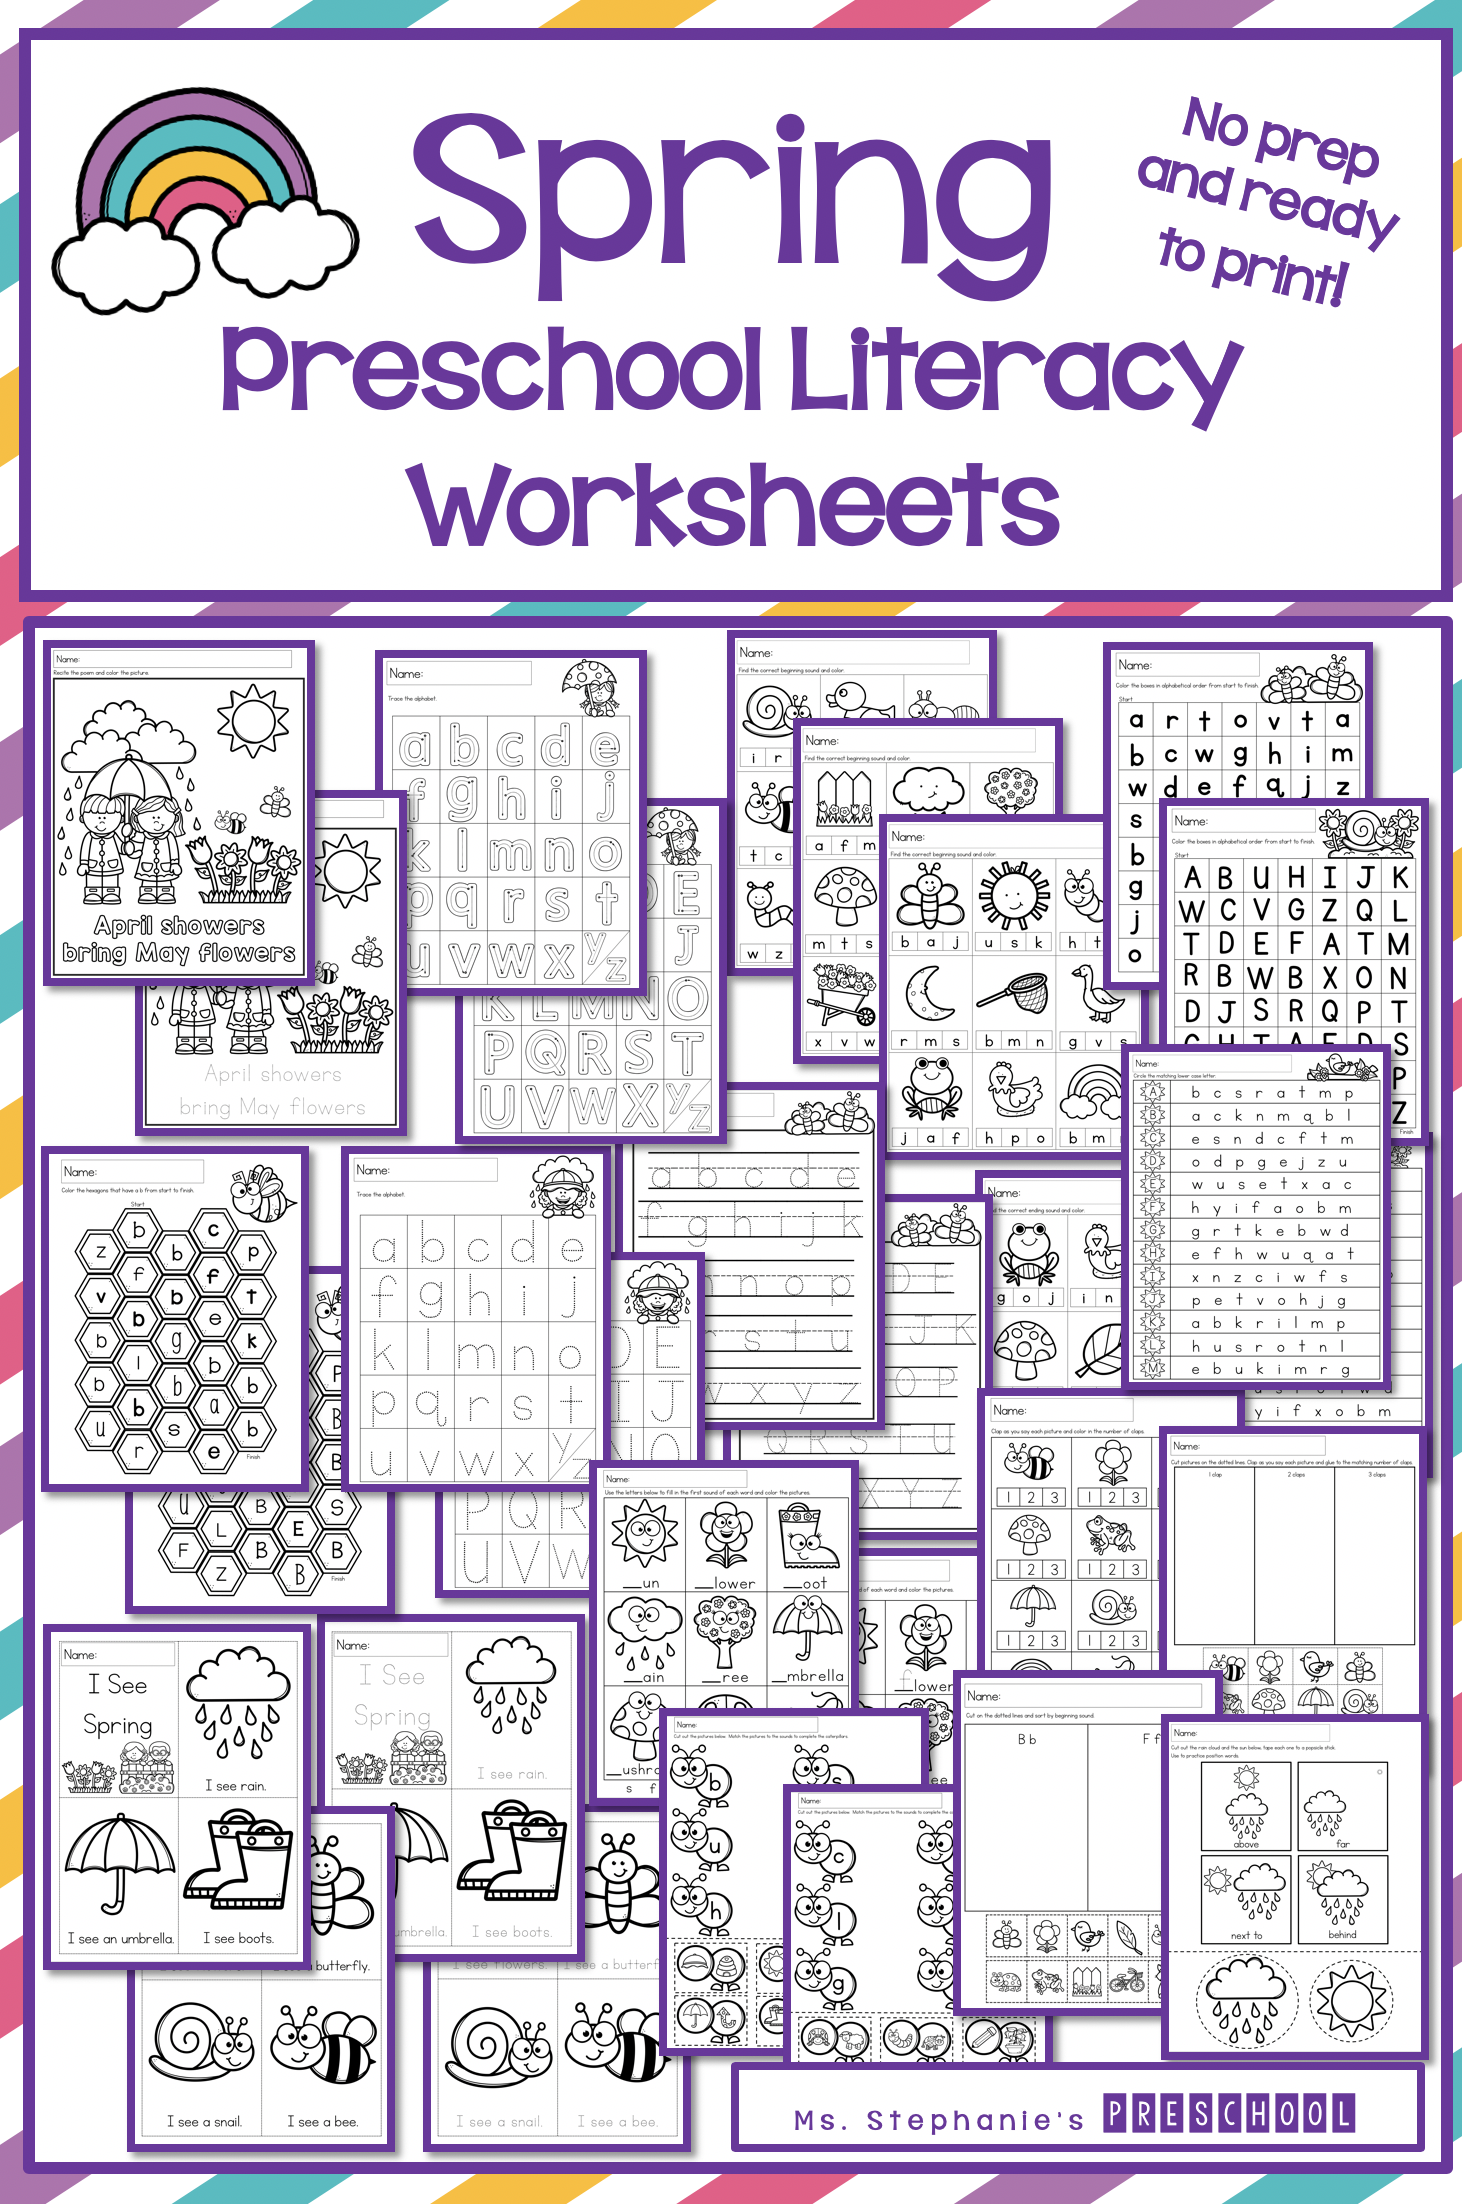 Spring Preschool Literacy Worksheets - Ms. Stephanie's Preschool